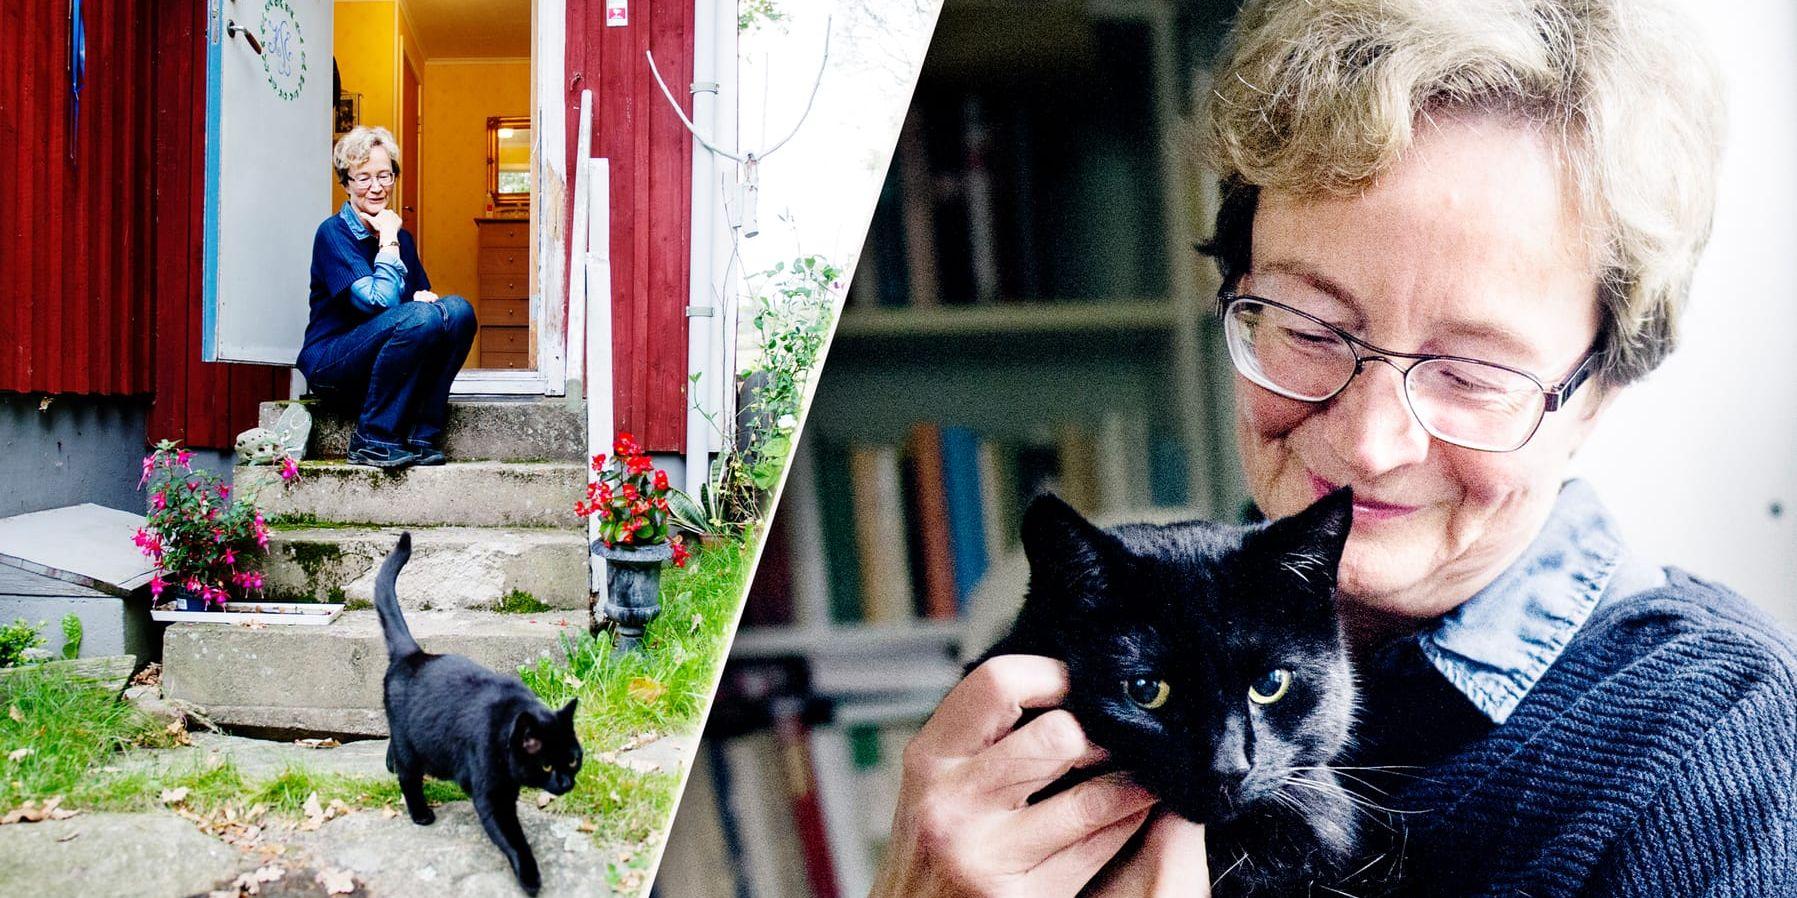 Förbundet. Ellen Mattson och katten Murre är nära varandra, men lever självständiga, parallella liv i huset. Ofta möts de. Som här. Bild: Anna Svanberg